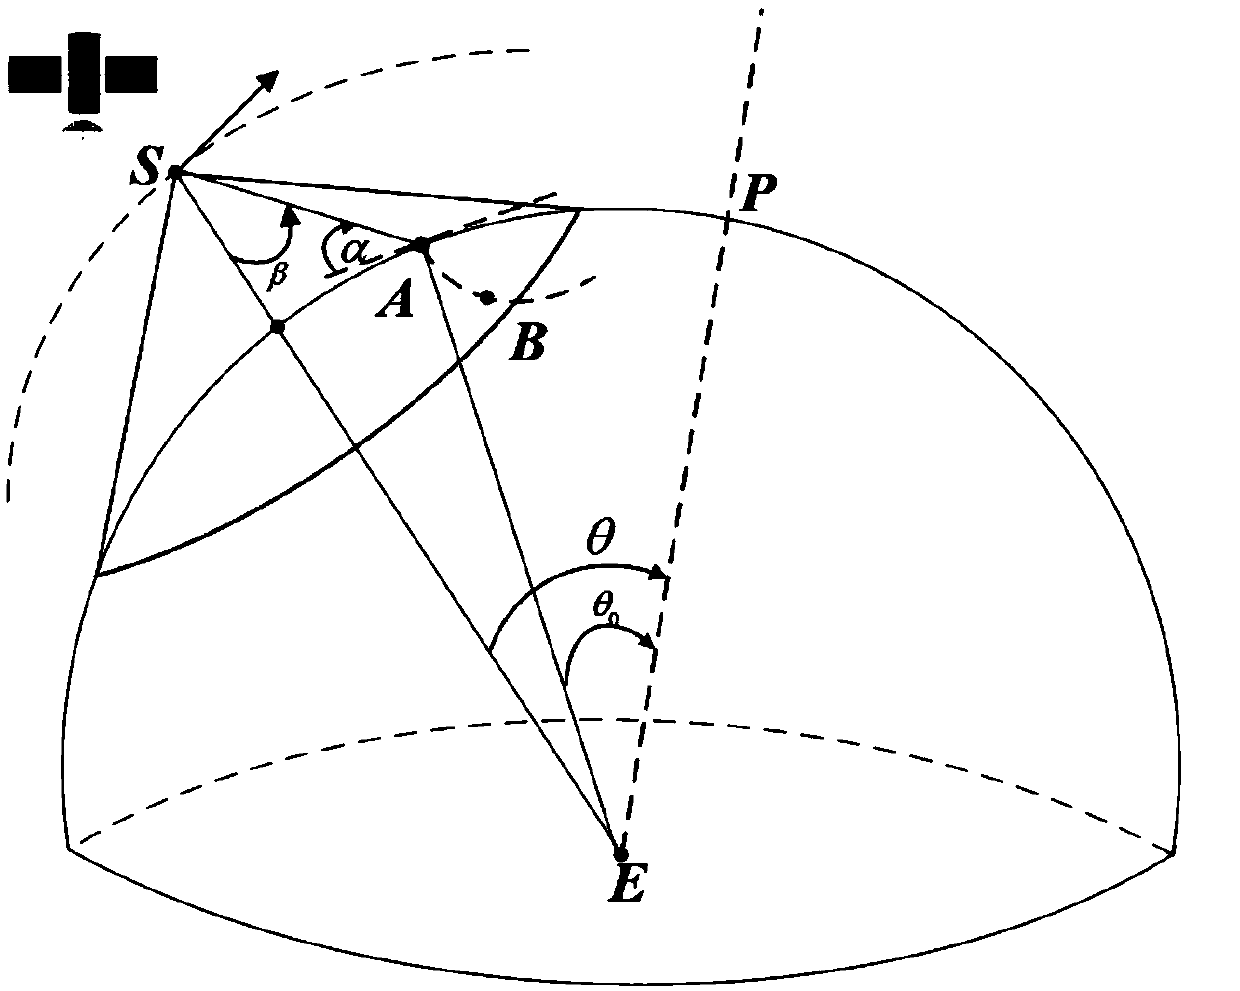 Elliptical orbit based multi-beam low orbit satellite channel simulation method